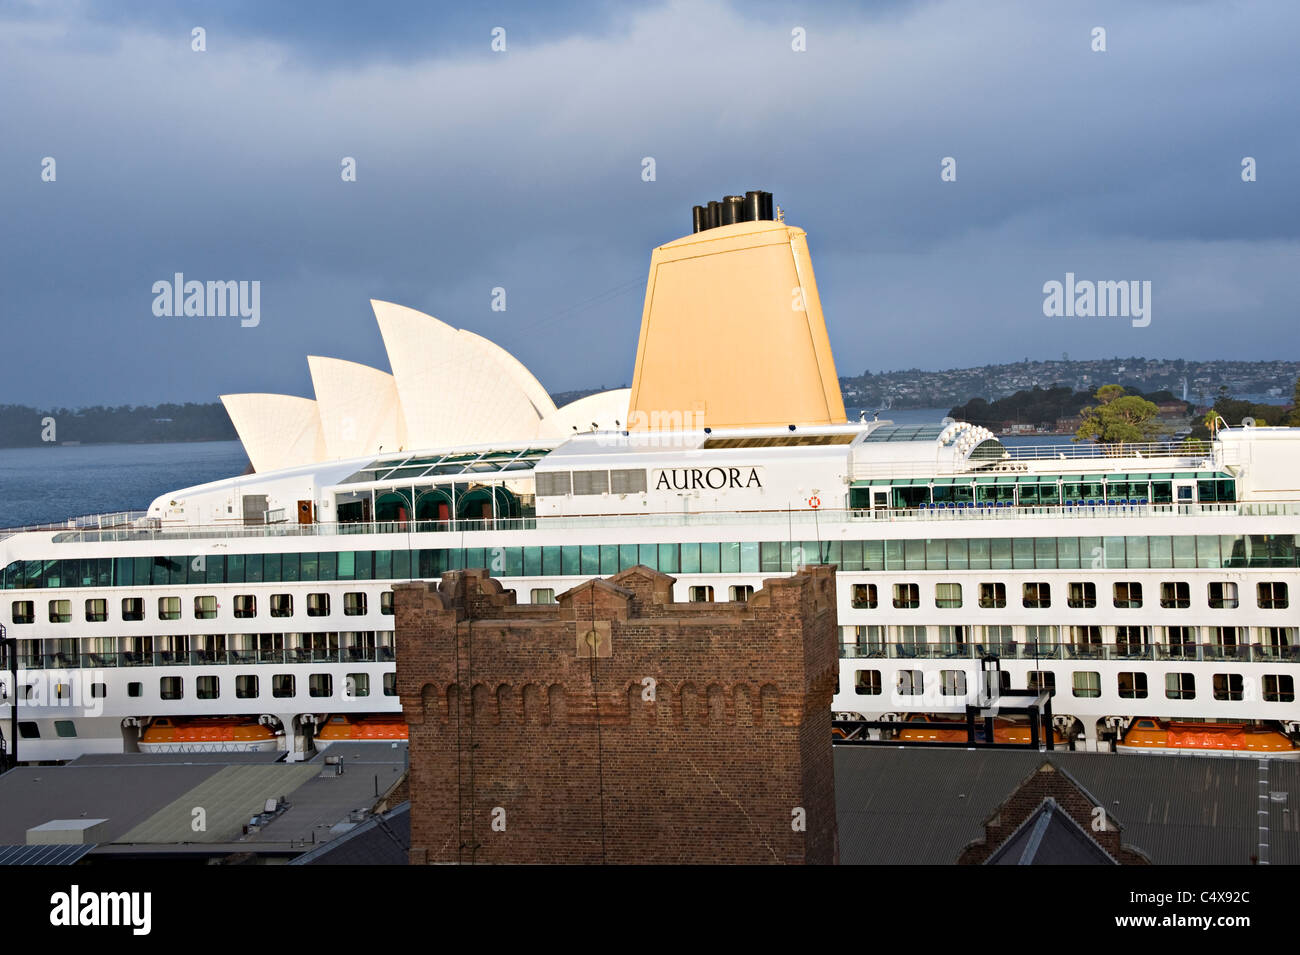 Le P&O Cruise Ship Aurora accosté au terminal passagers d'outre-mer dans le port de Sydney NSW Australie Nouvelle Galles du Sud Banque D'Images